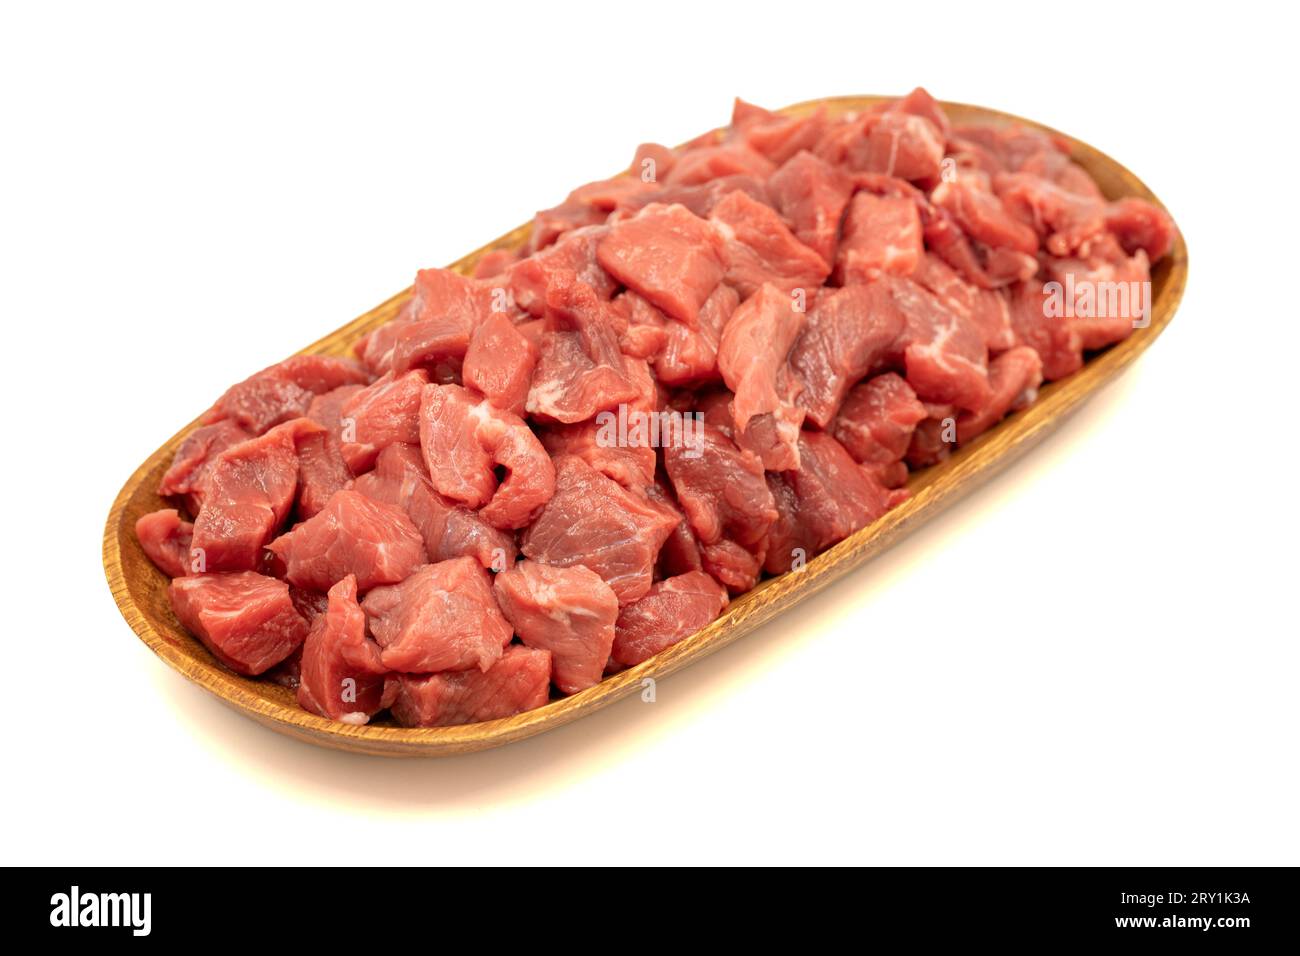 Kalbfleisch gewürfelt isoliert auf weißem Hintergrund. Rohes Rindfleisch, gewürfelt mit Kräutern und Gewürzen Stockfoto